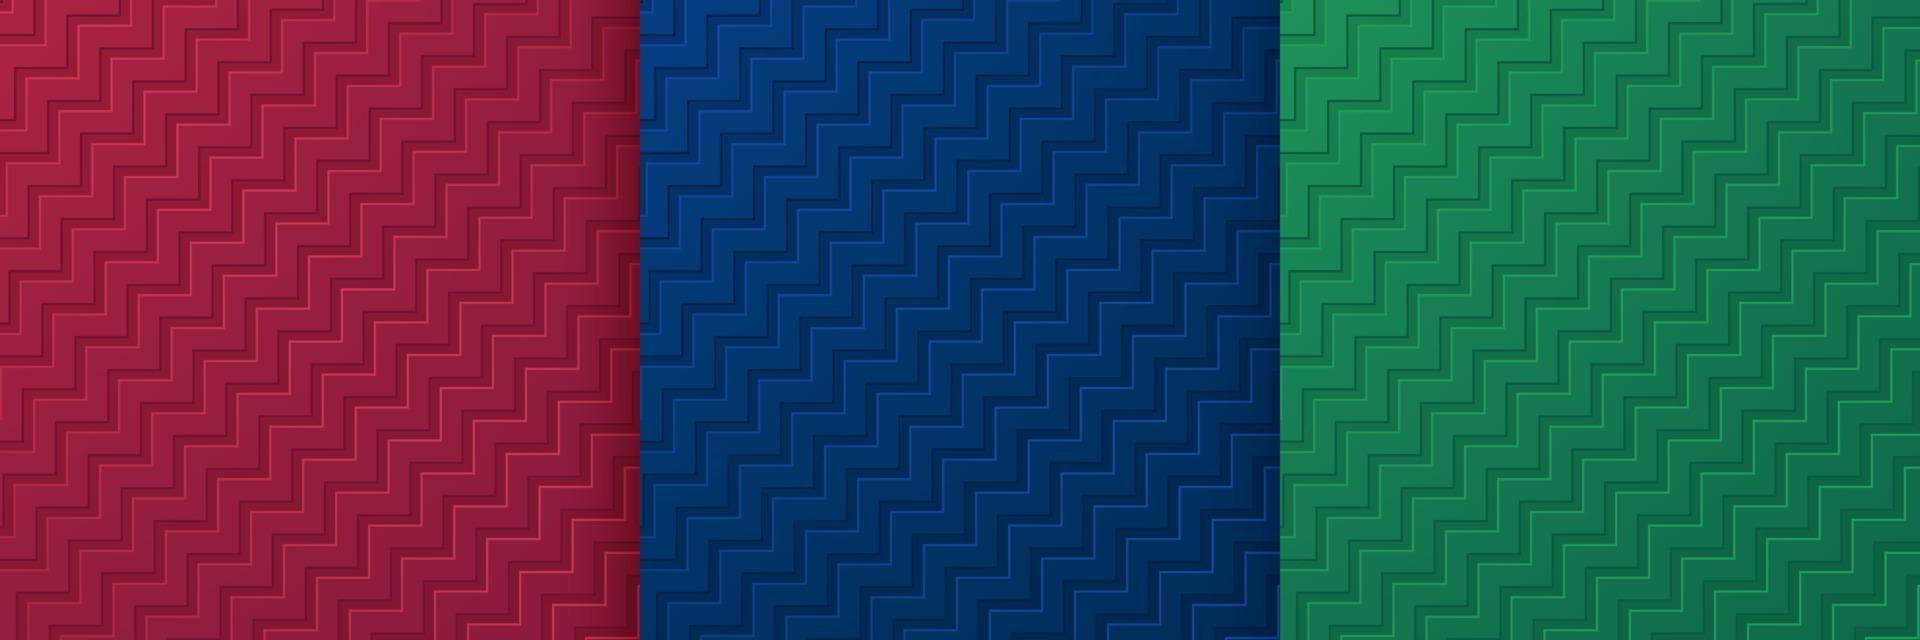 set van 3D-gekartelde lijnen textuur op donker rode, blauwe en groene achtergrond. verzameling moderne zigzaglijnsjablonen in trendy kleurontwerp. minimale golvende lijn patroon achtergrond. vector illustratie